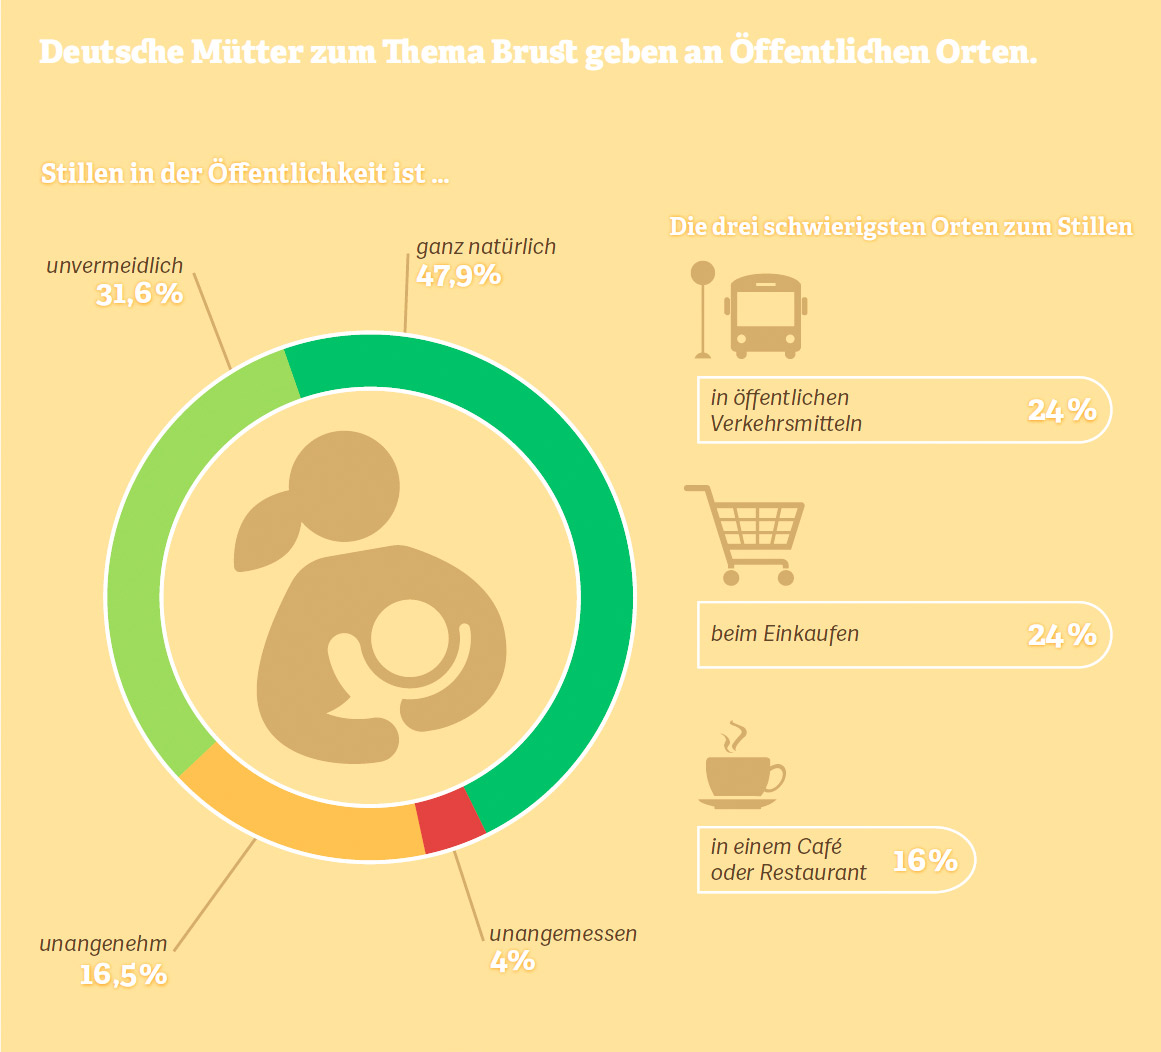 Grafik: Deutsche Mütter zum Thema Brustgeben an öffentlichen Orten. Quelle: Statista, 2015